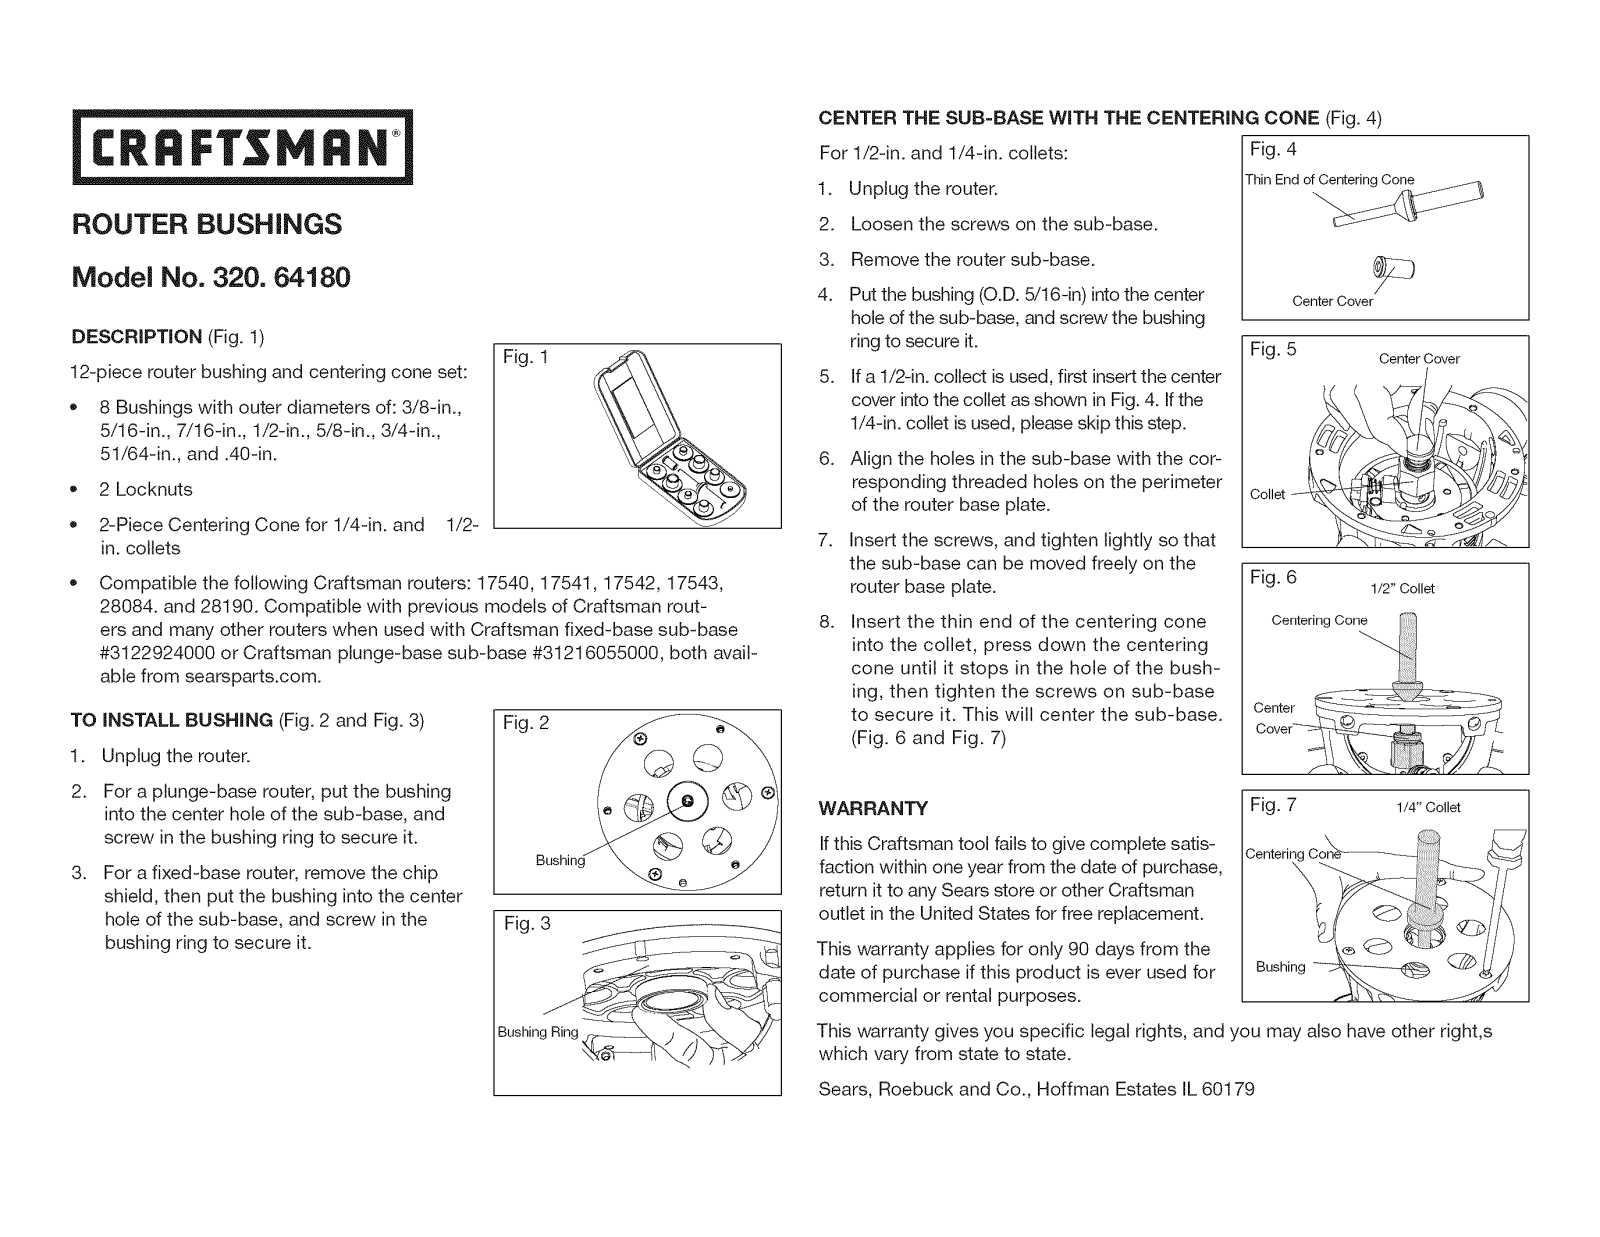 Craftsman 320.64180 User Manual